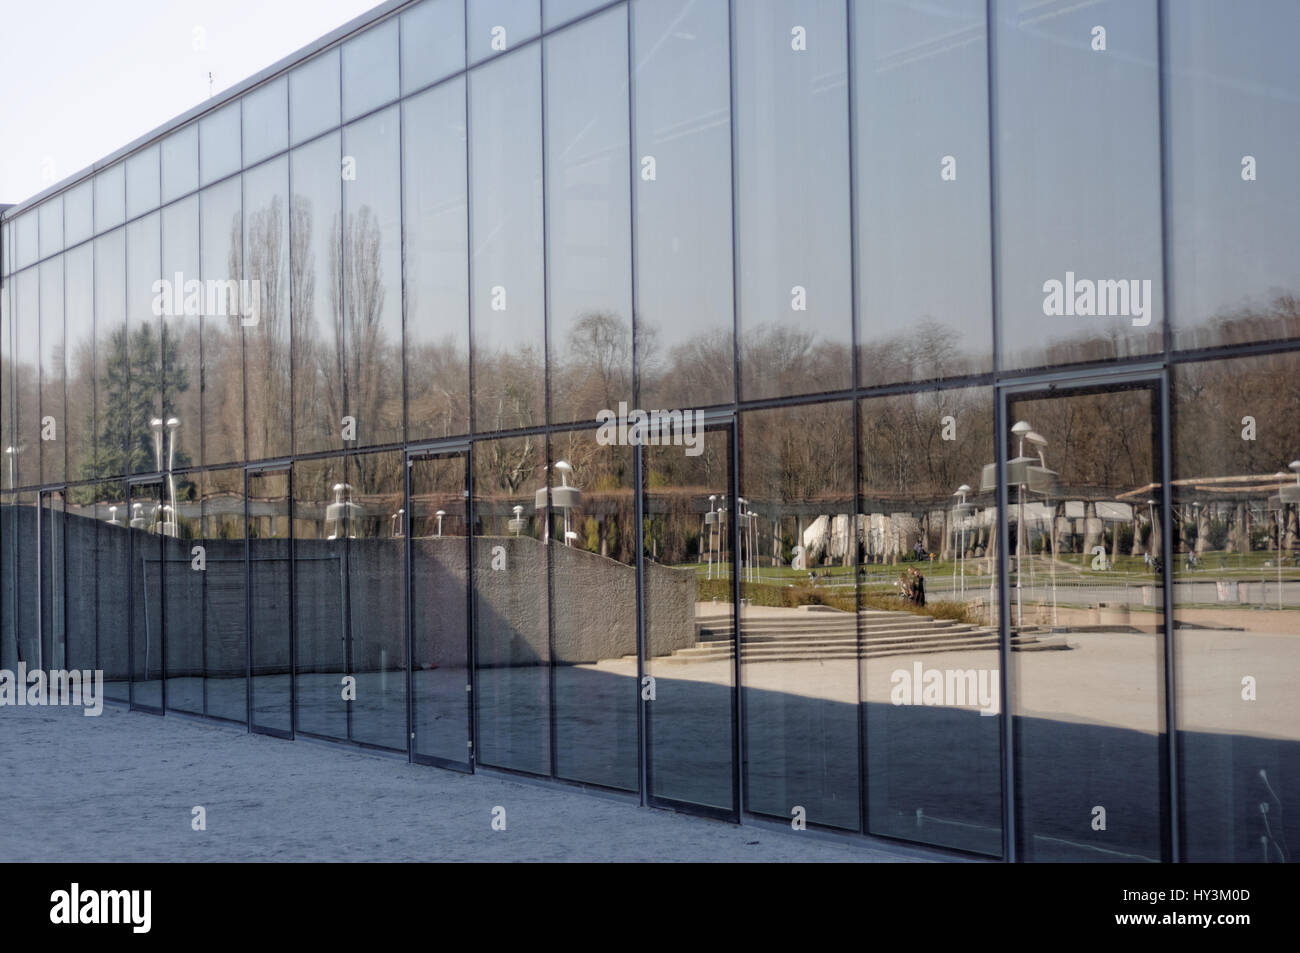 La Halle du Centenaire (Hala Stulecia) dans la région de Wroclaw. Mur de verre. La Pologne. Banque D'Images